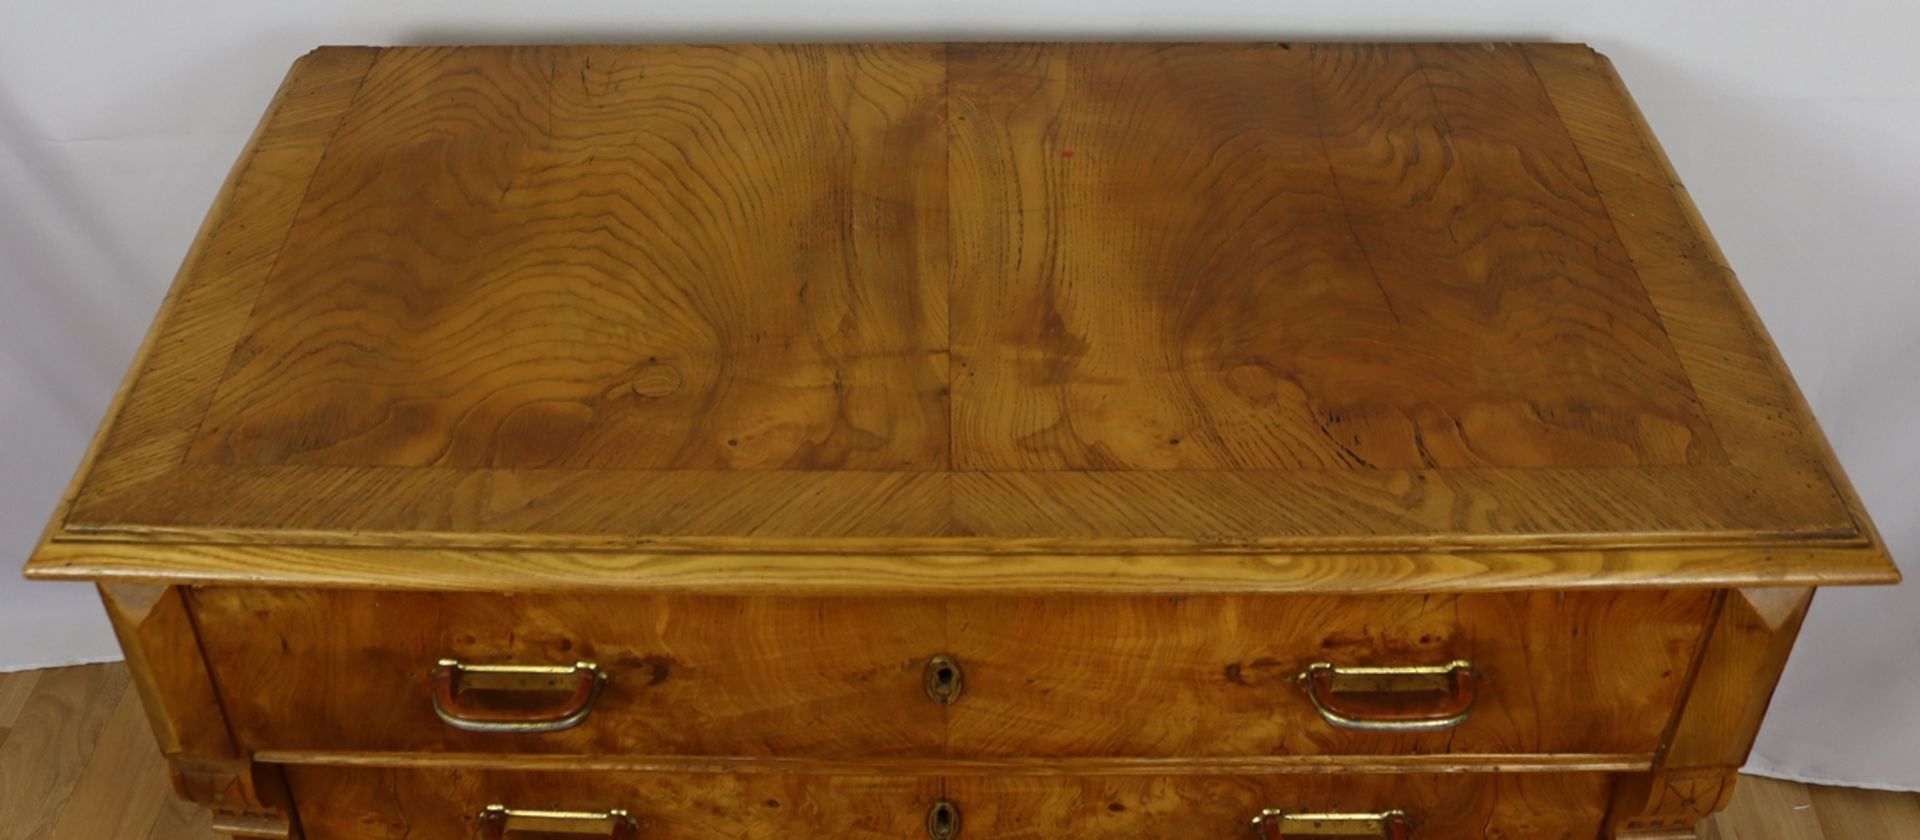 Gründerzeit chest of drawers, Historism circa 1880 - 1900, North German - Image 2 of 4